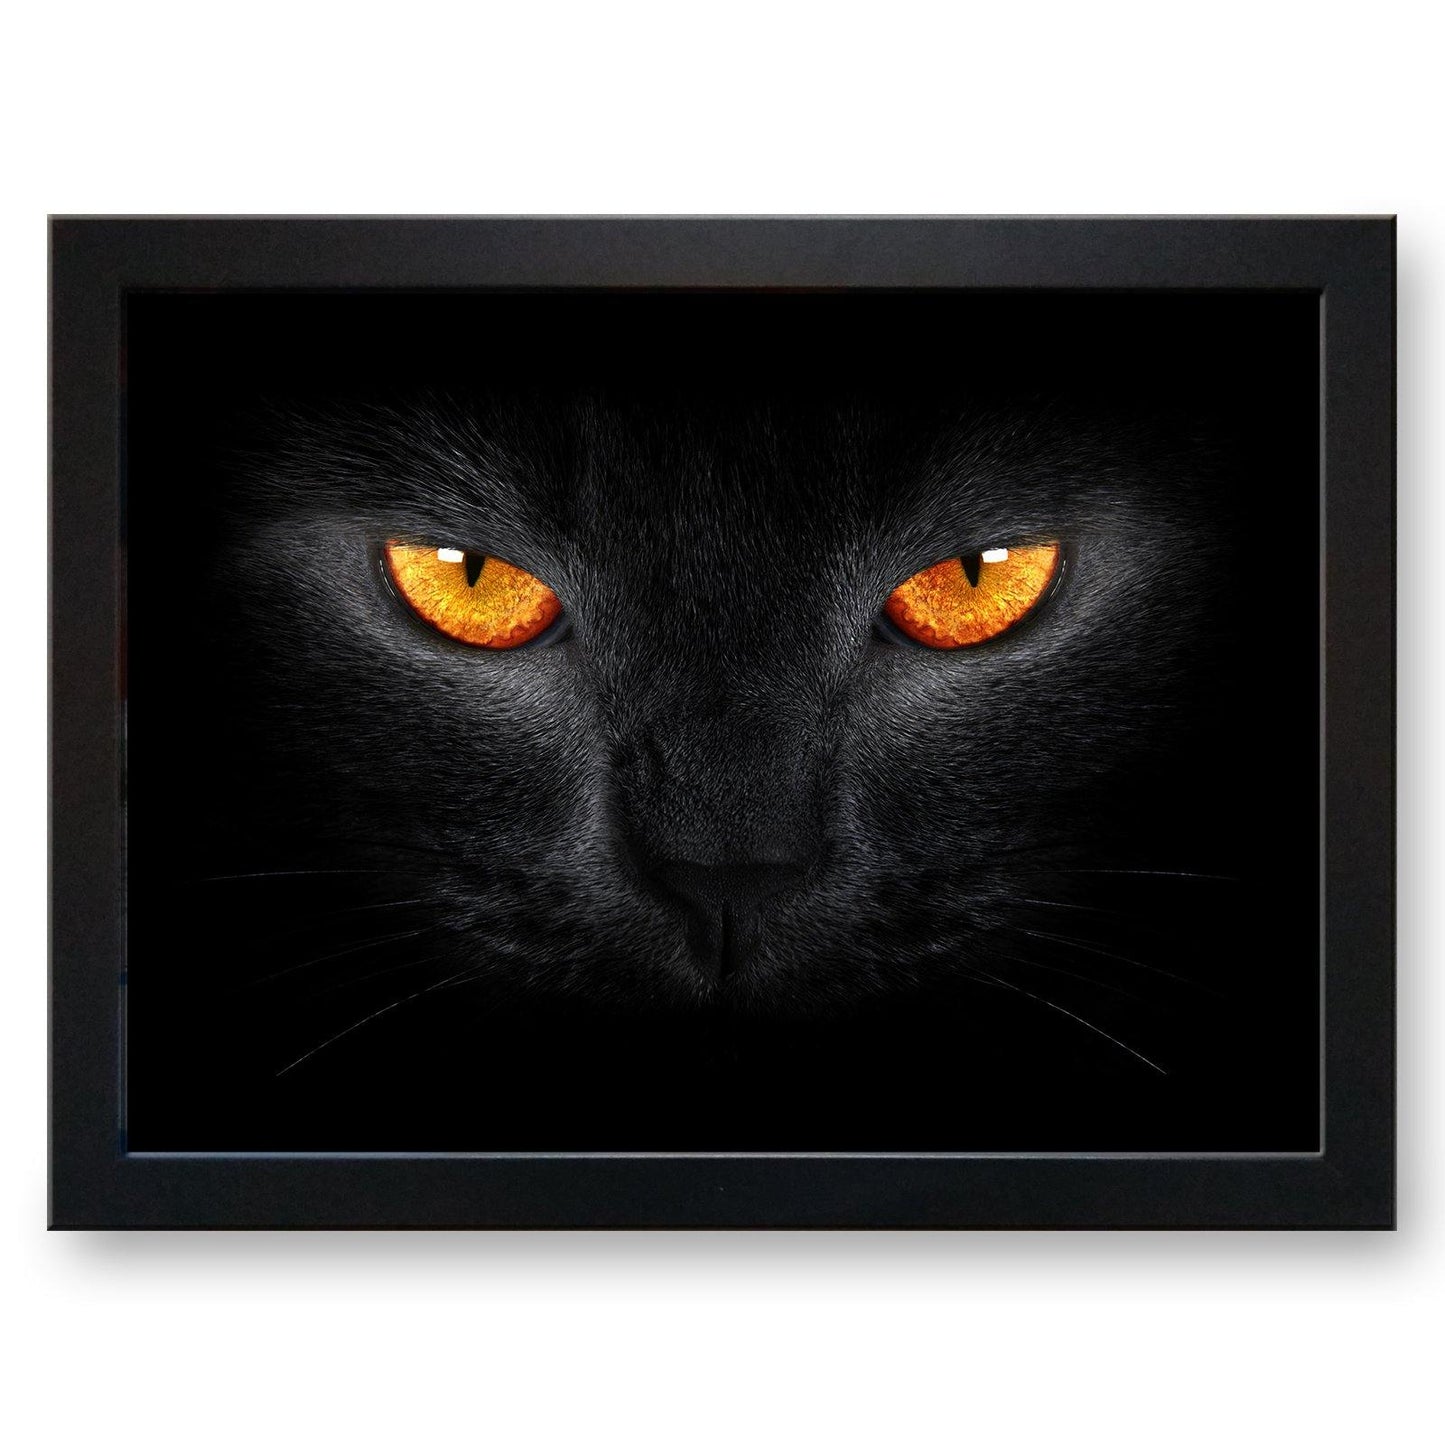 Black Cat with Orange Eyes Cushioned Lap Tray - my personalised lap tray | mooki   -   